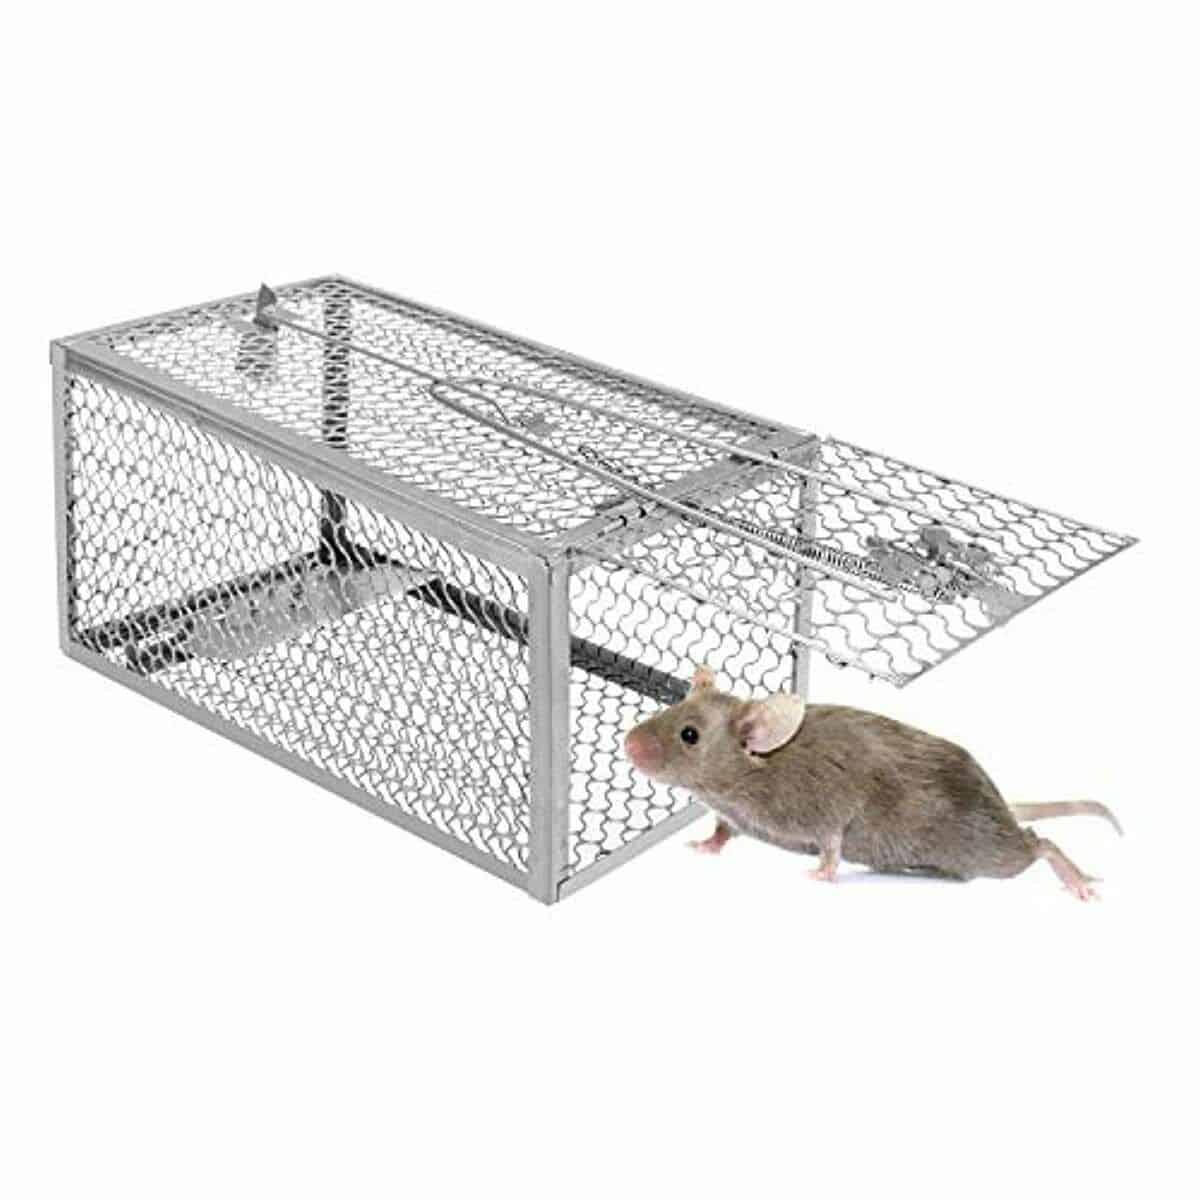 60 Minutes Piège à souris 🐭🐭🐭 Meilleure idée piège à souris eau 🐭 Top  10 Piège à rats 